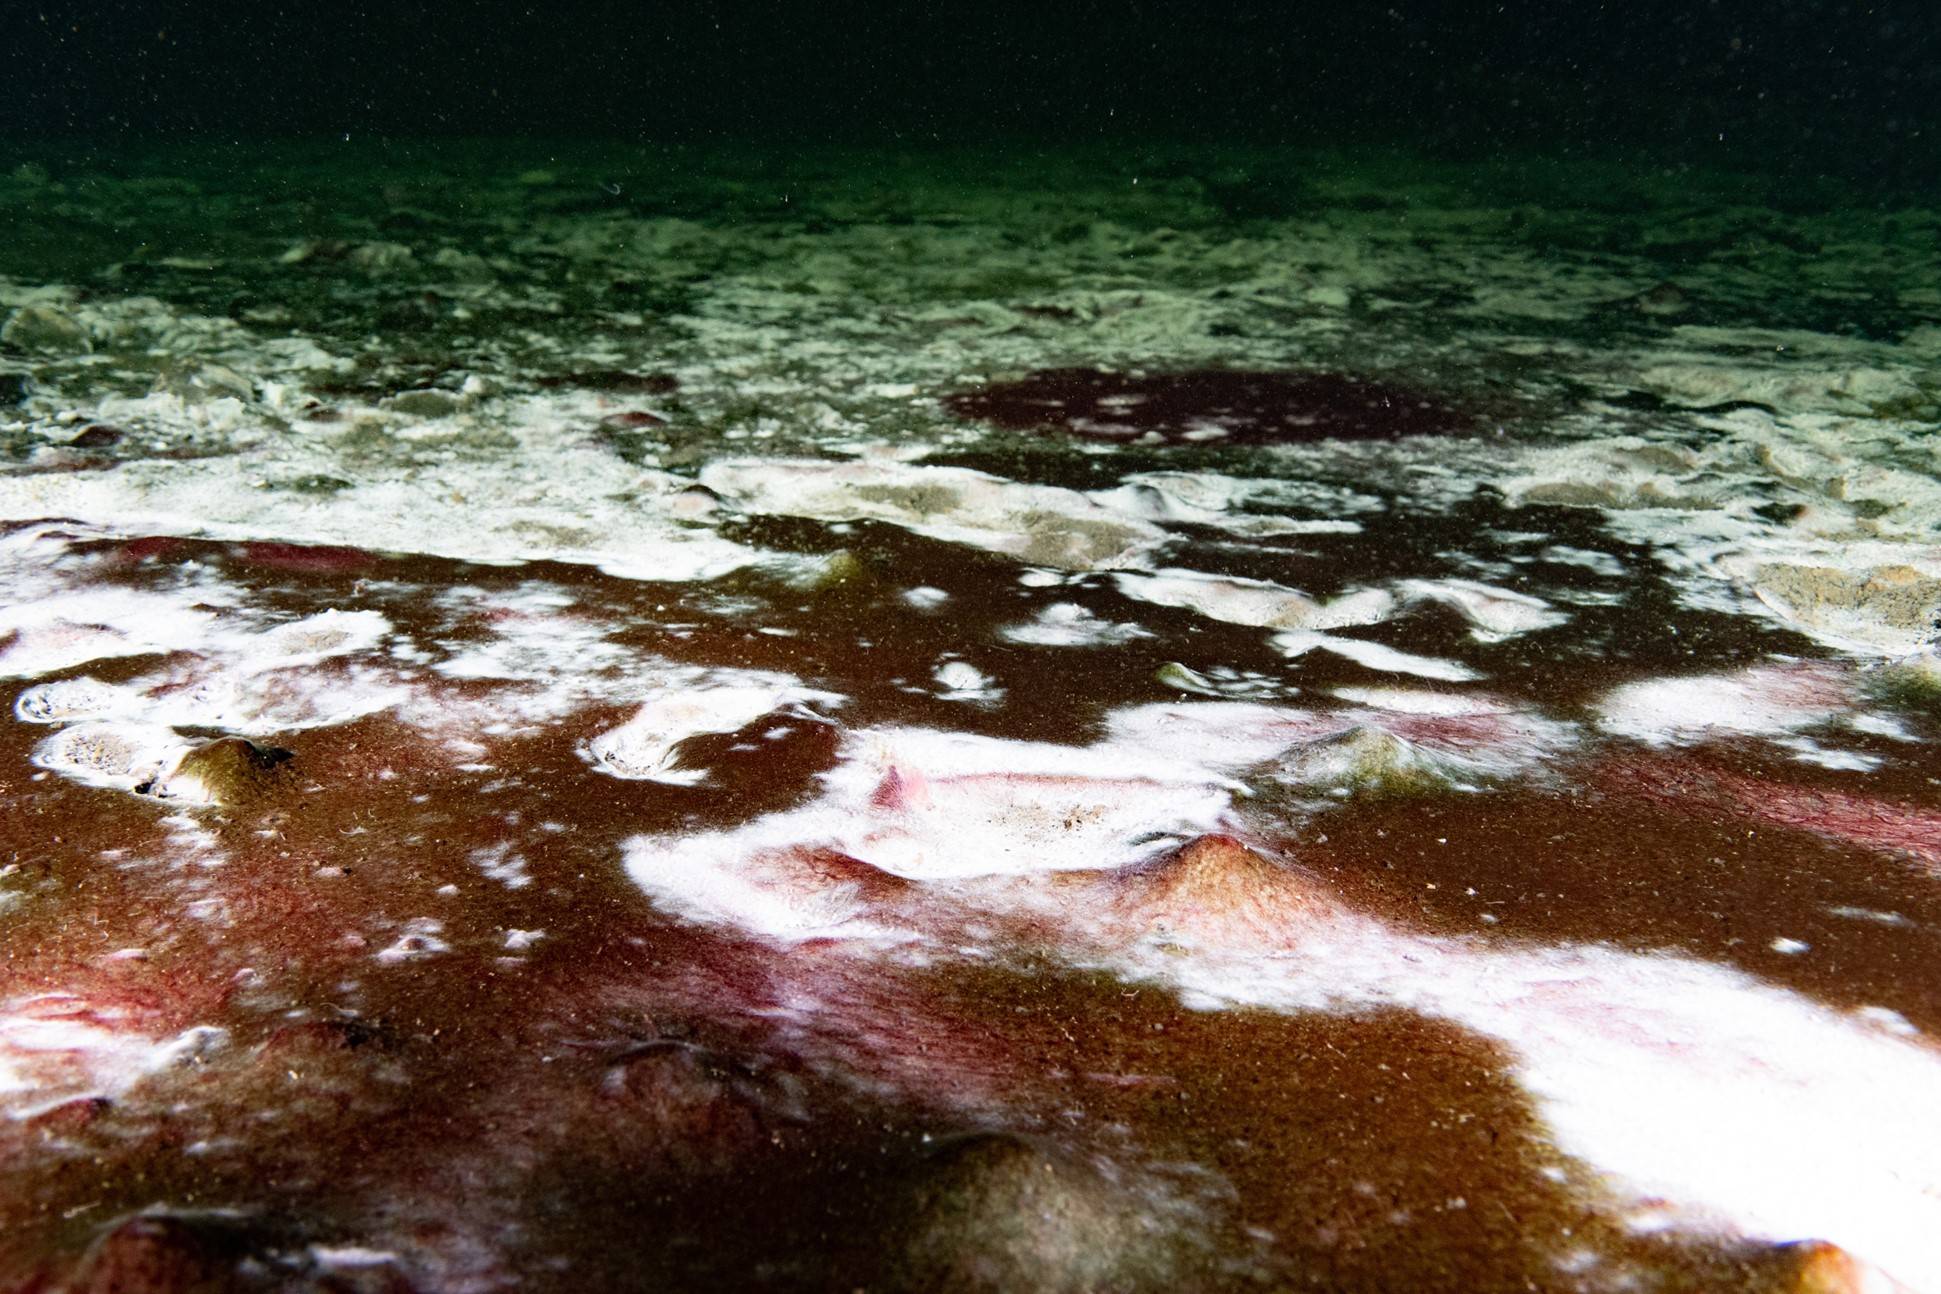 Underwater sinkhole